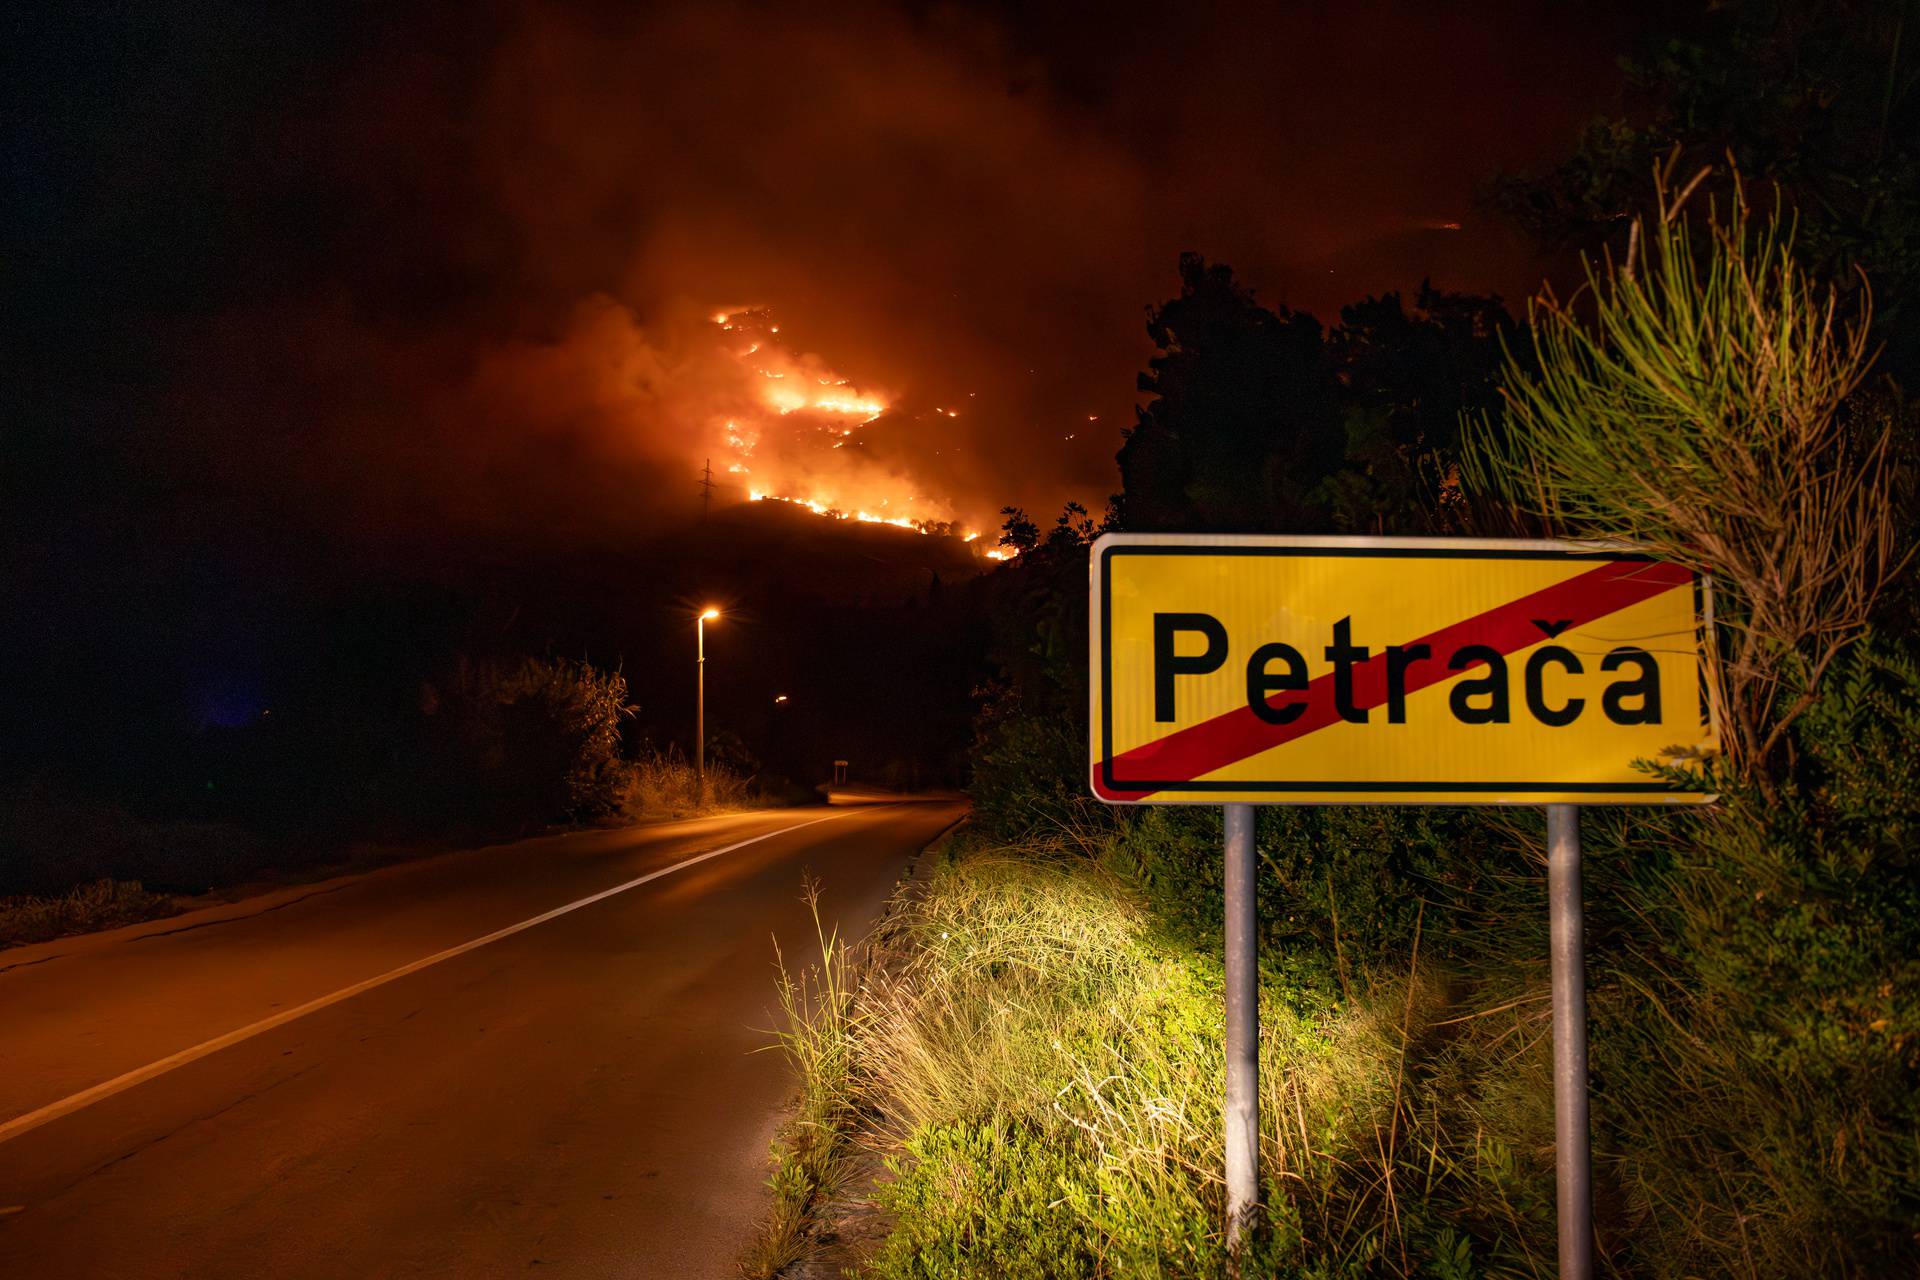 Širi se požar na području Župe dubrovačke, orkansko jugo otežava situaciju